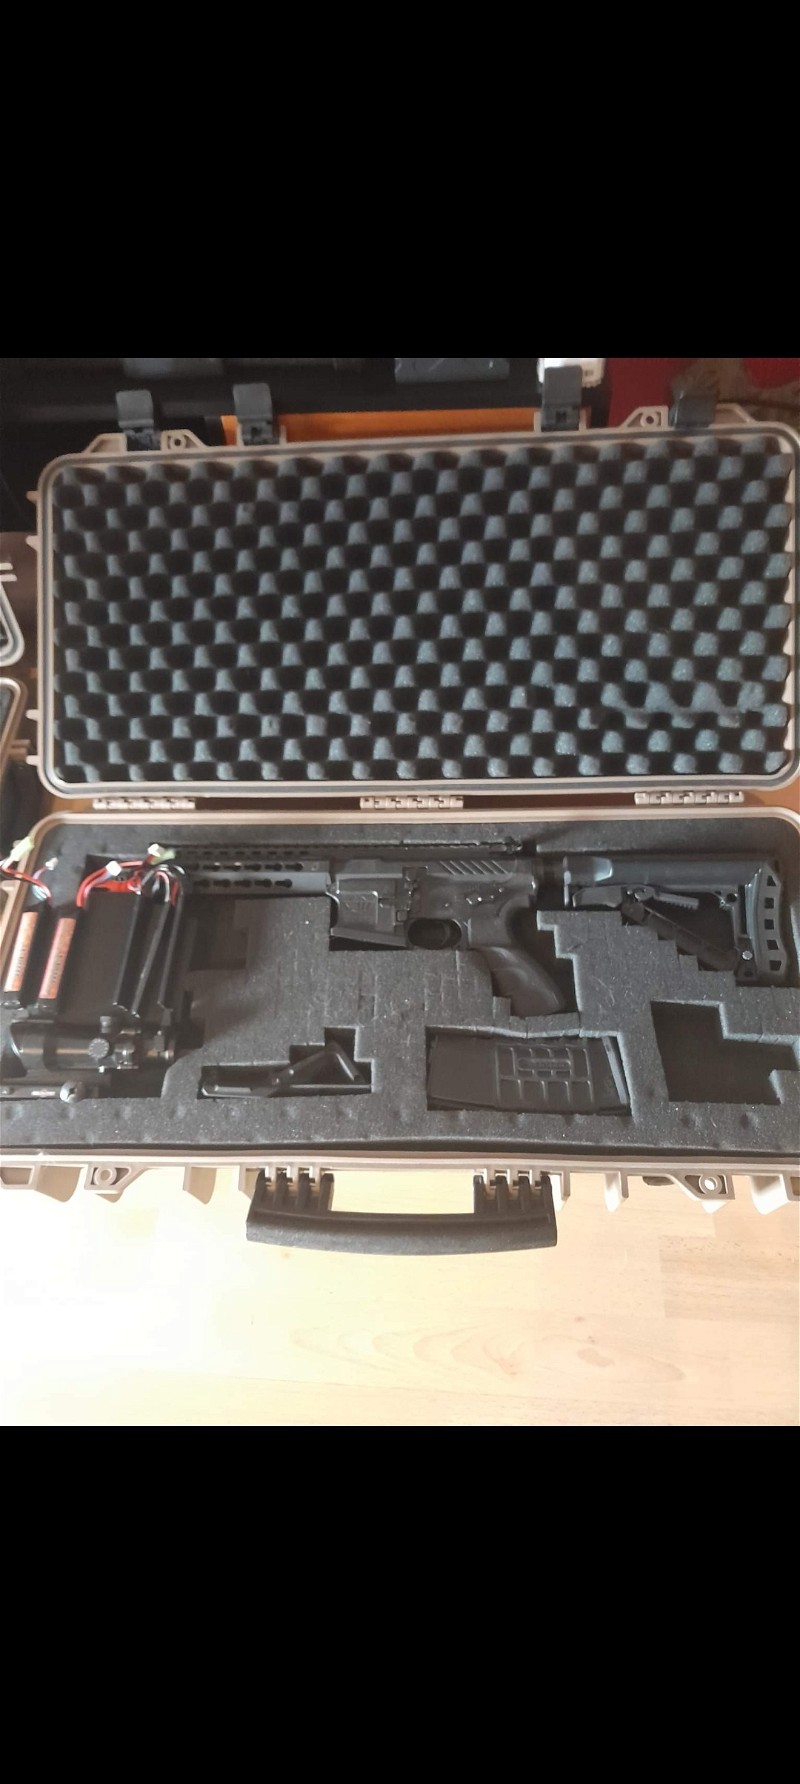 Afbeelding 1 van G&g cm16 srs + case + red dot scope and batterijen.